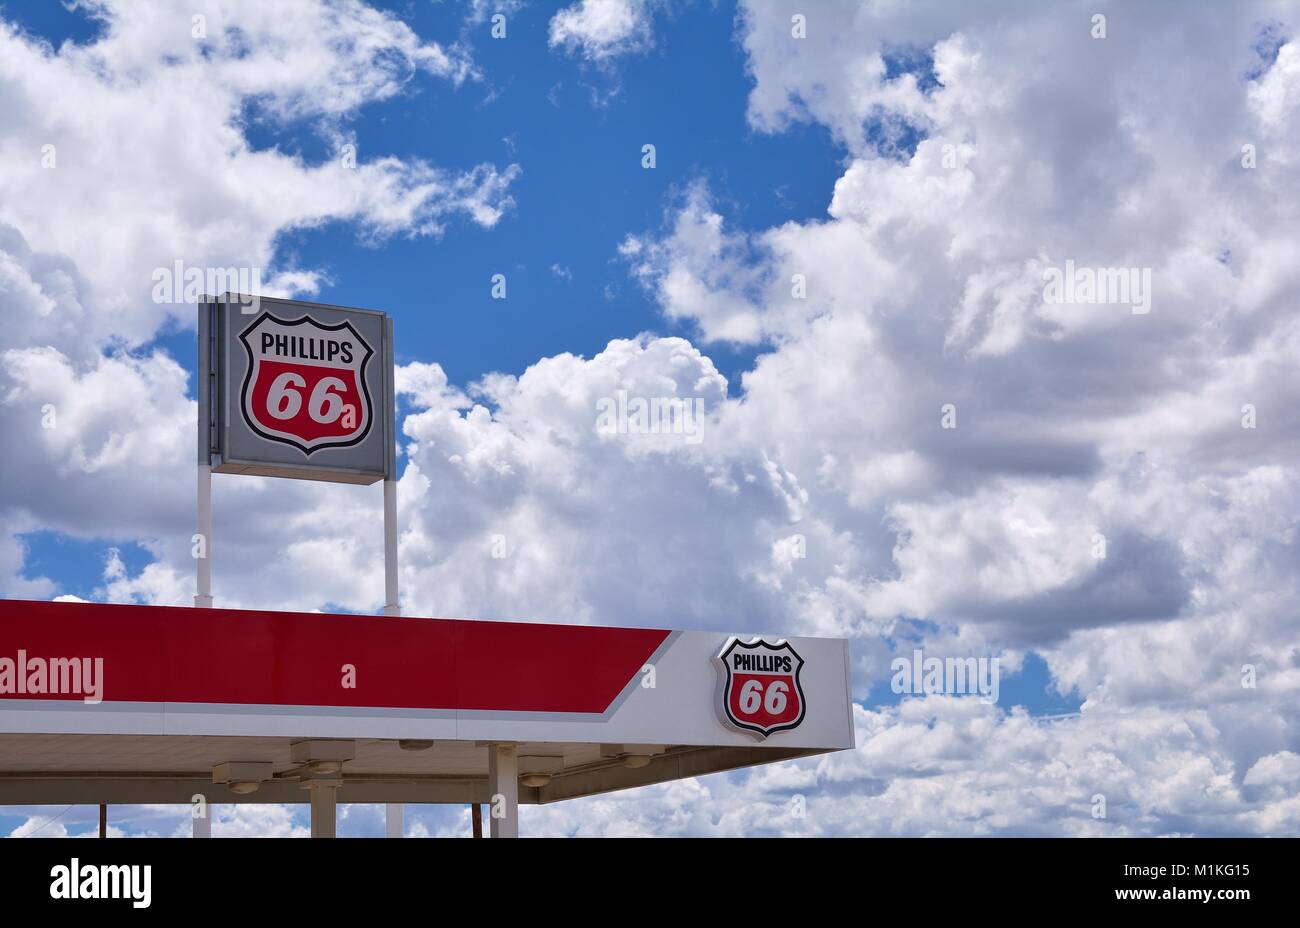 Nuovo Messico, Stati Uniti d'America - 22 luglio 2017: Phillips 66 gas station segno e logo. Phillips 66 Company è una multinazionale americana energy company. Foto Stock